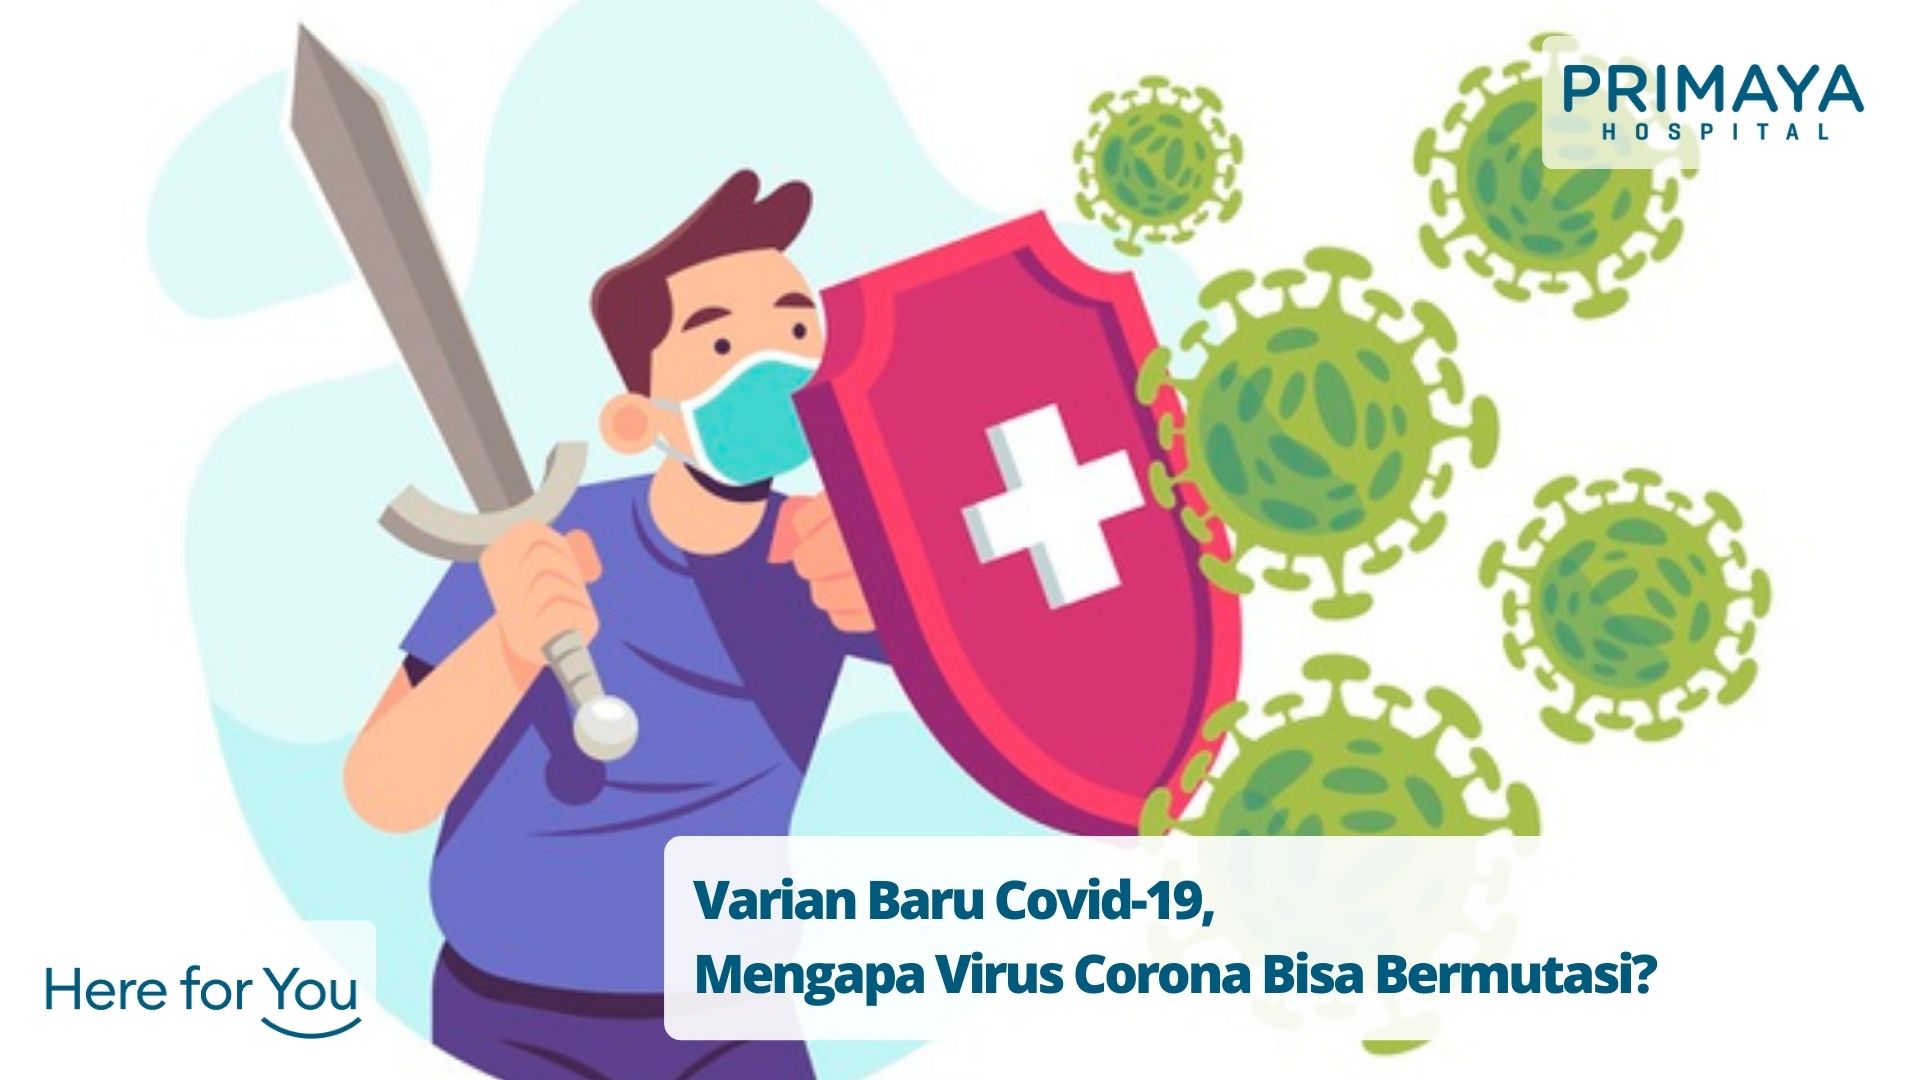 Varian Baru Covid-19, Mengapa Virus Corona Bisa Bermutasi